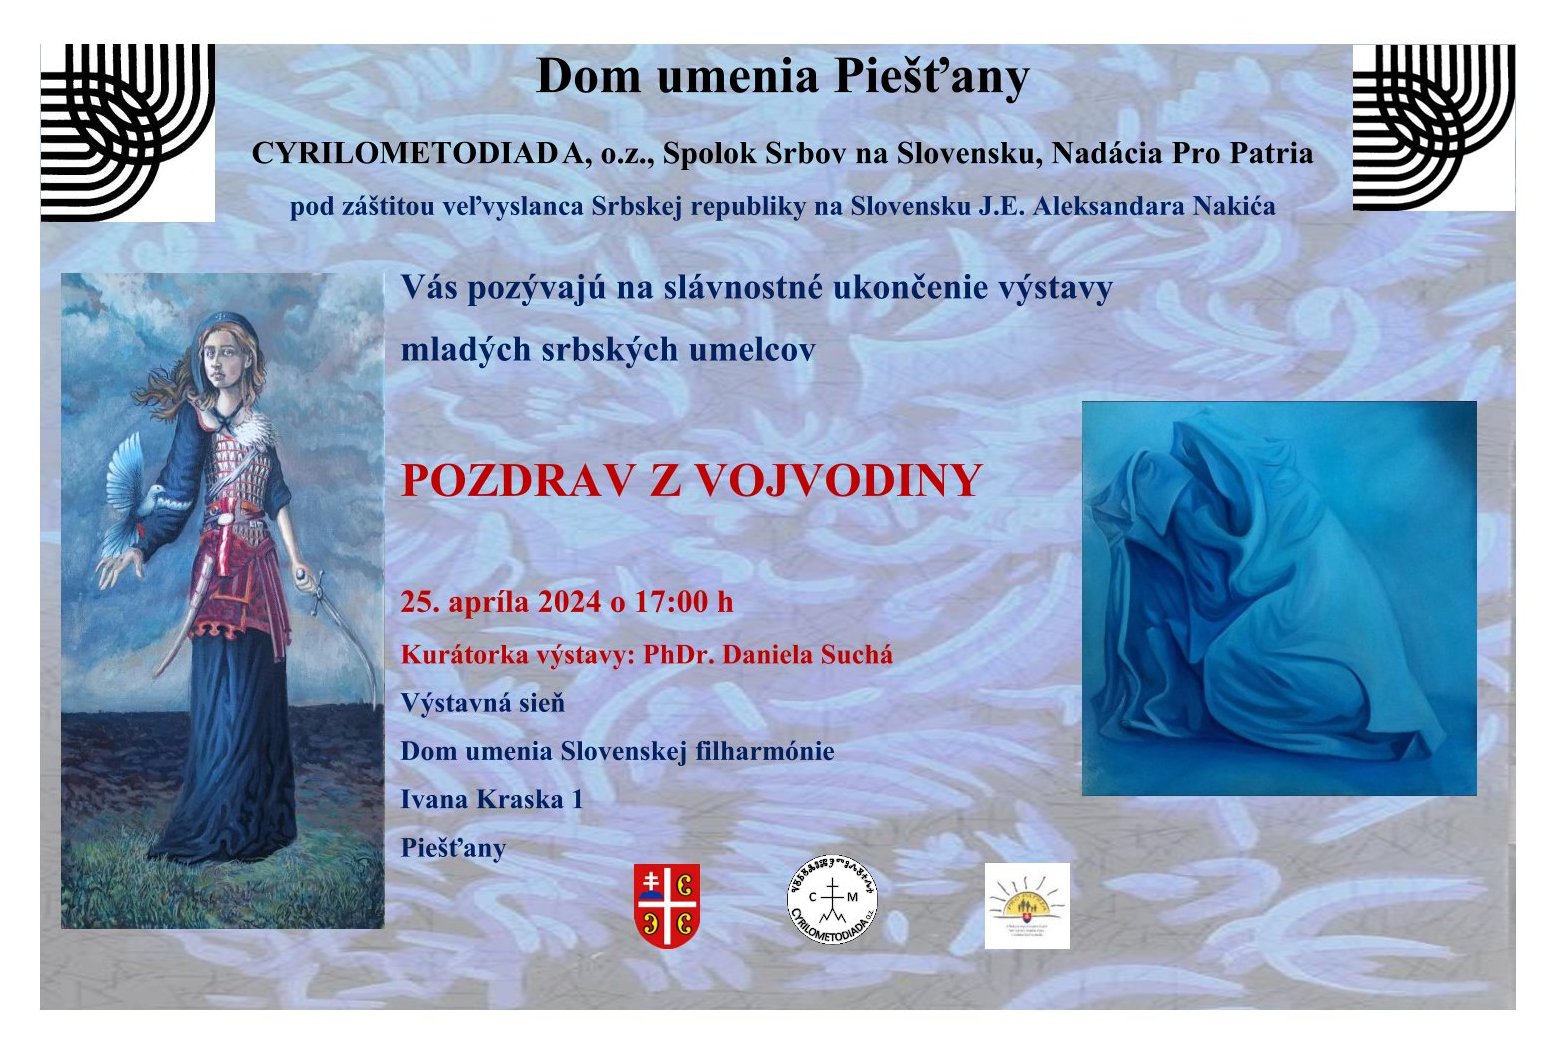 Pozdrav z Vojvodiny 2024 Pieany - ukonenie vstavy mladch srbskch umelcov